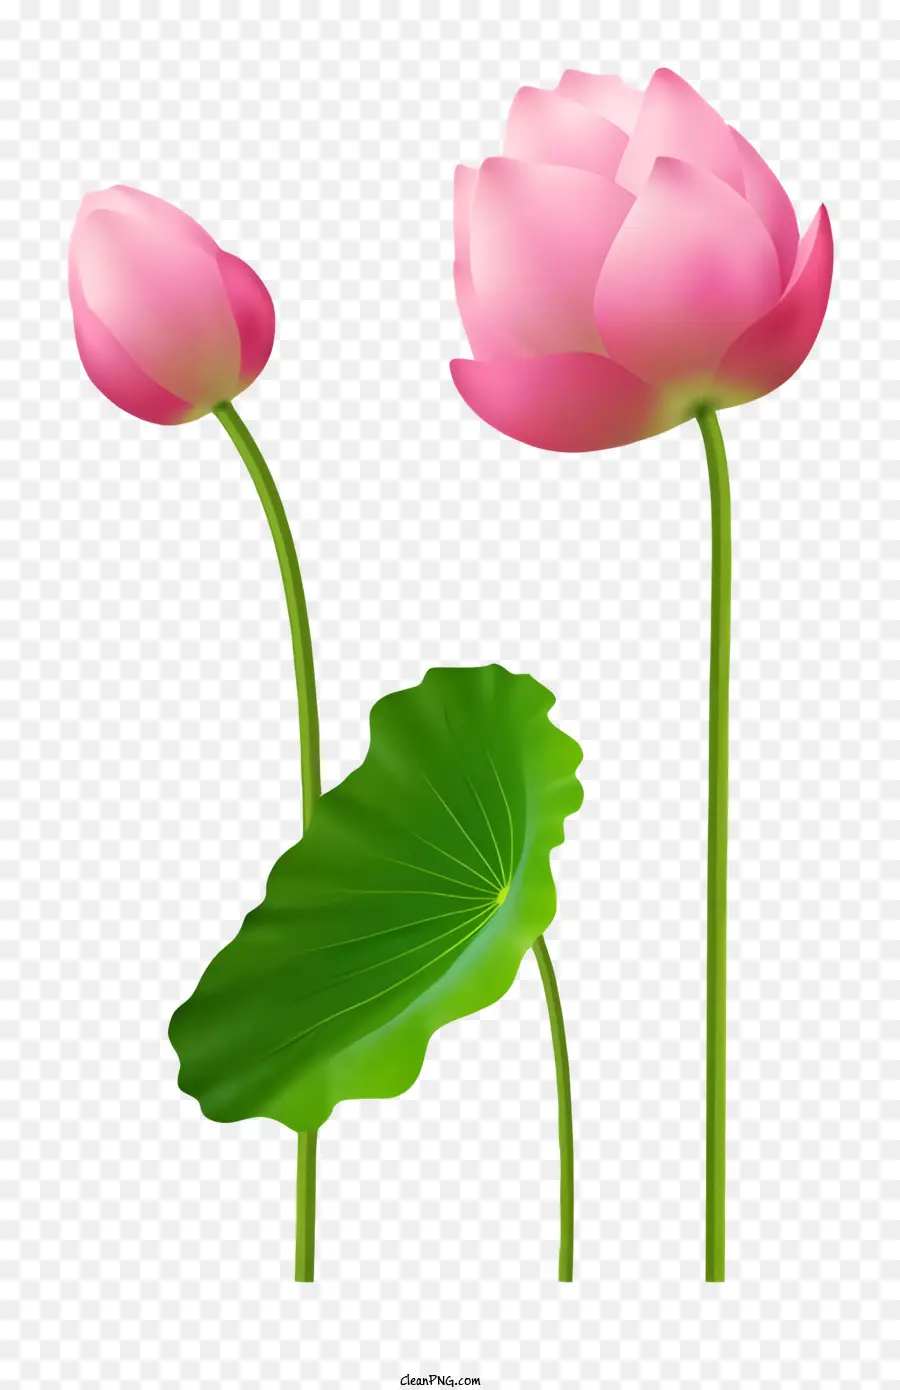 Florale Schönheit - Drei rosa Lotusblumen mit grünen Blättern